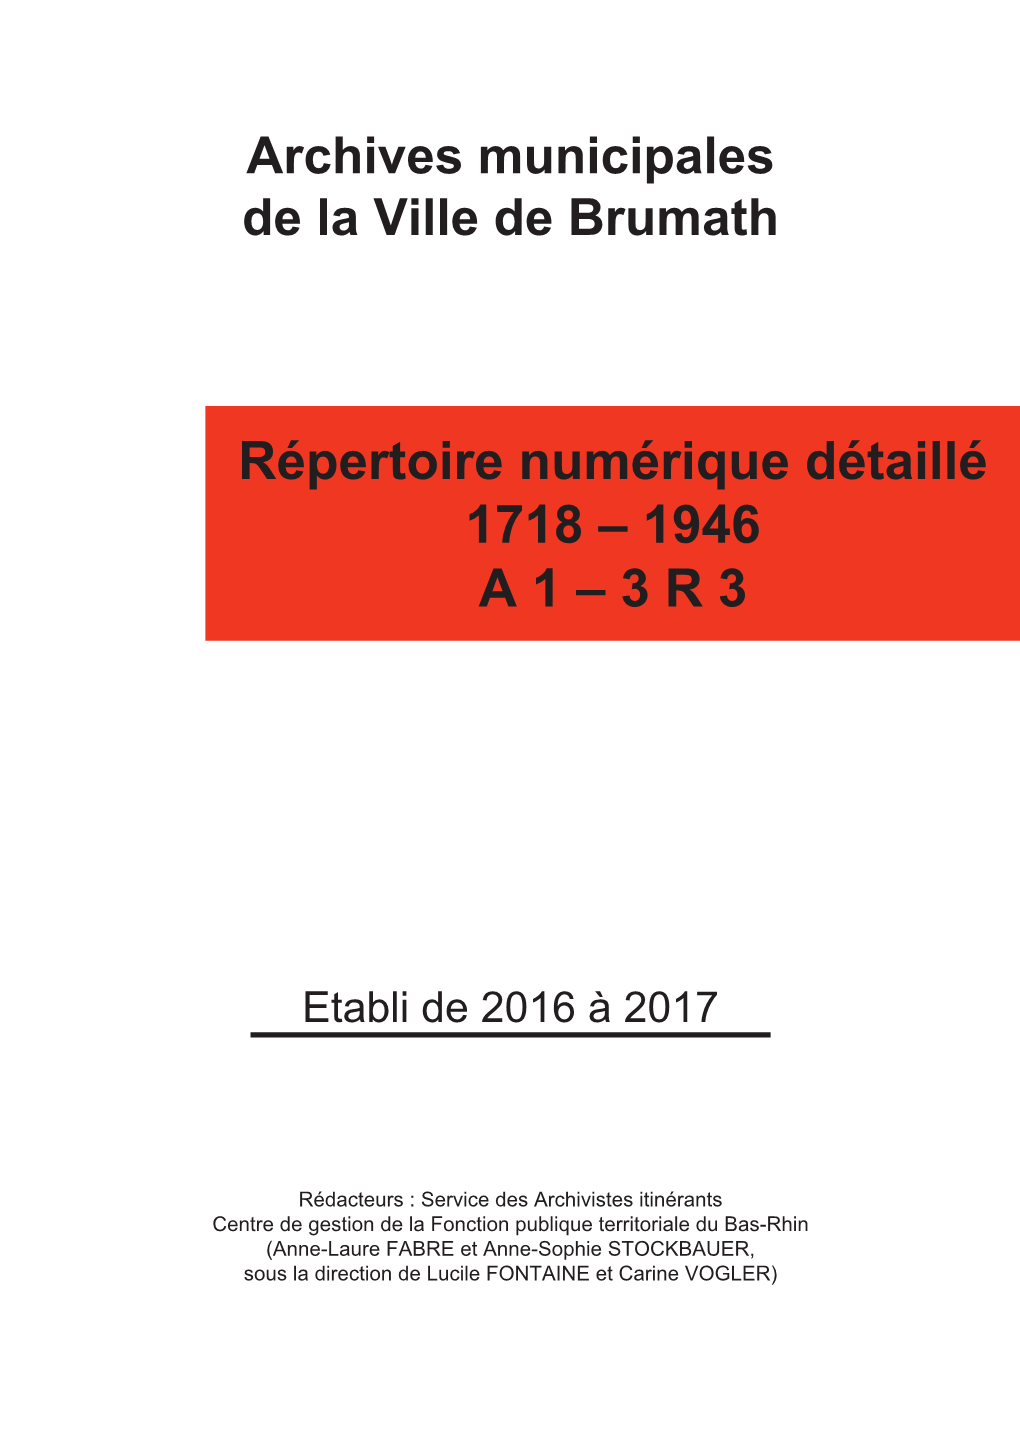 Répertoire Numérique Détaillé 1718 – 1946 a 1 – 3 R 3